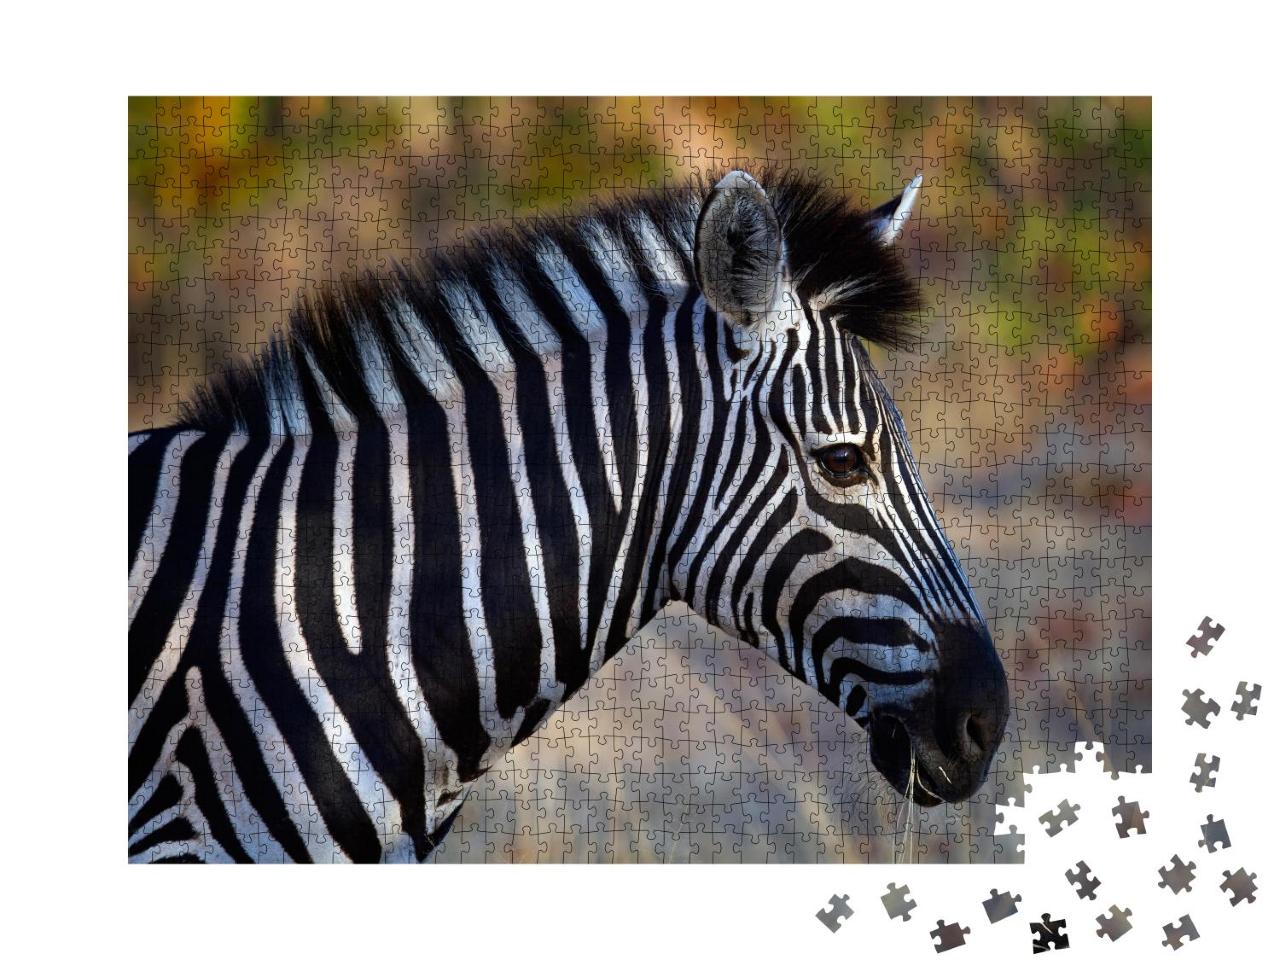 Puzzle 1000 Teile „Seiten-Porträt eines Zebras“